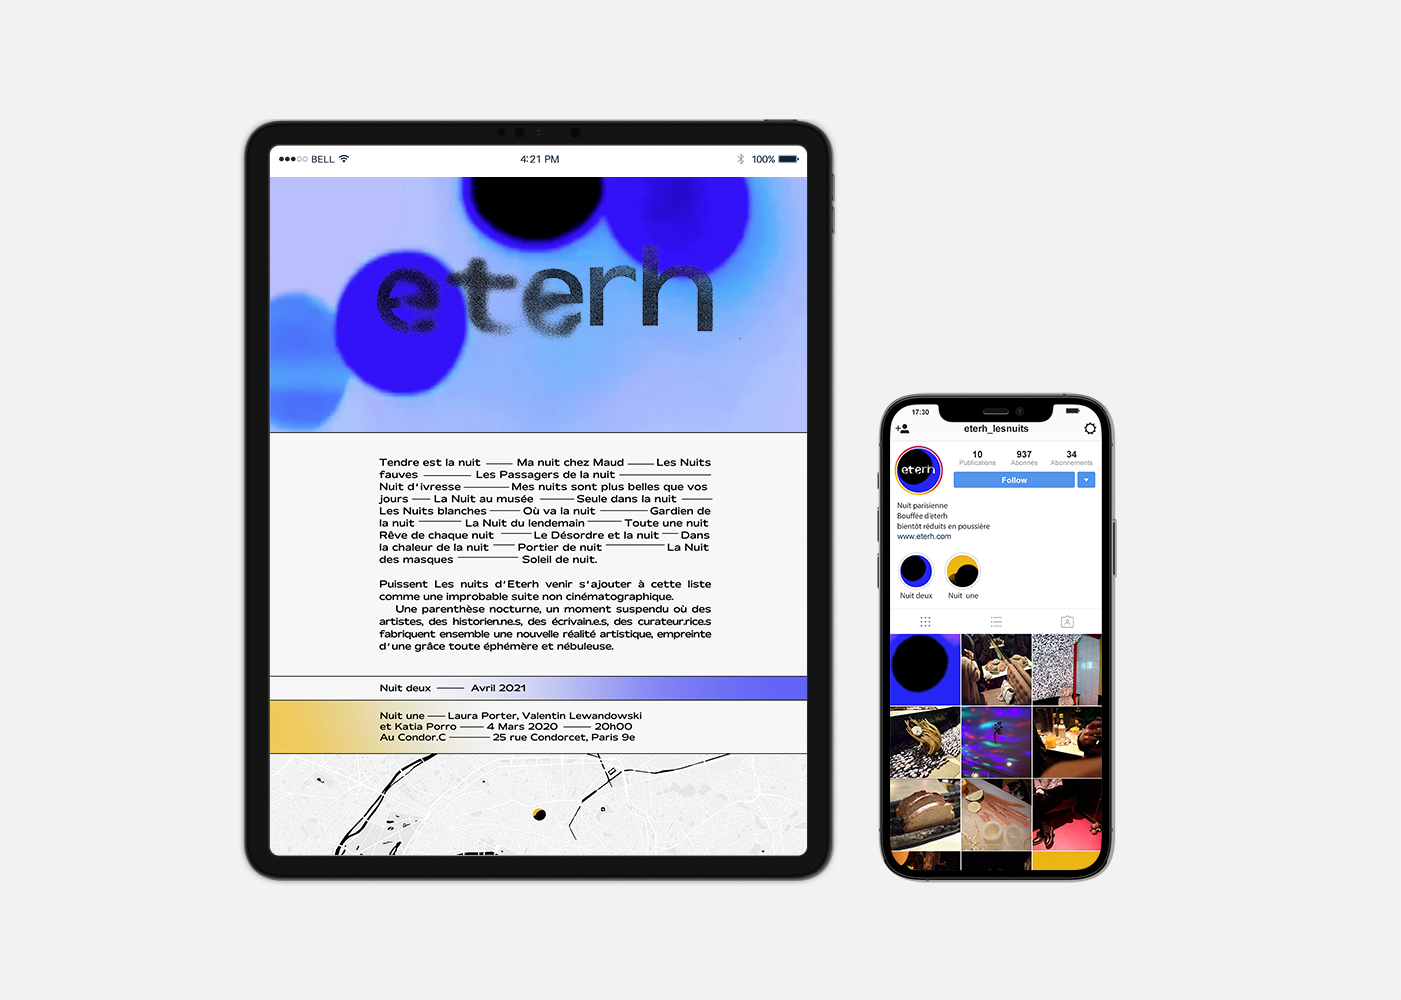 Photographie de l'ipad ouvert sur le site internet d'eterh et d'un iphone ouvert sur la page instagram d'eterh. Tout deux ayant été pensé pour offrir un contenu complémentaire.